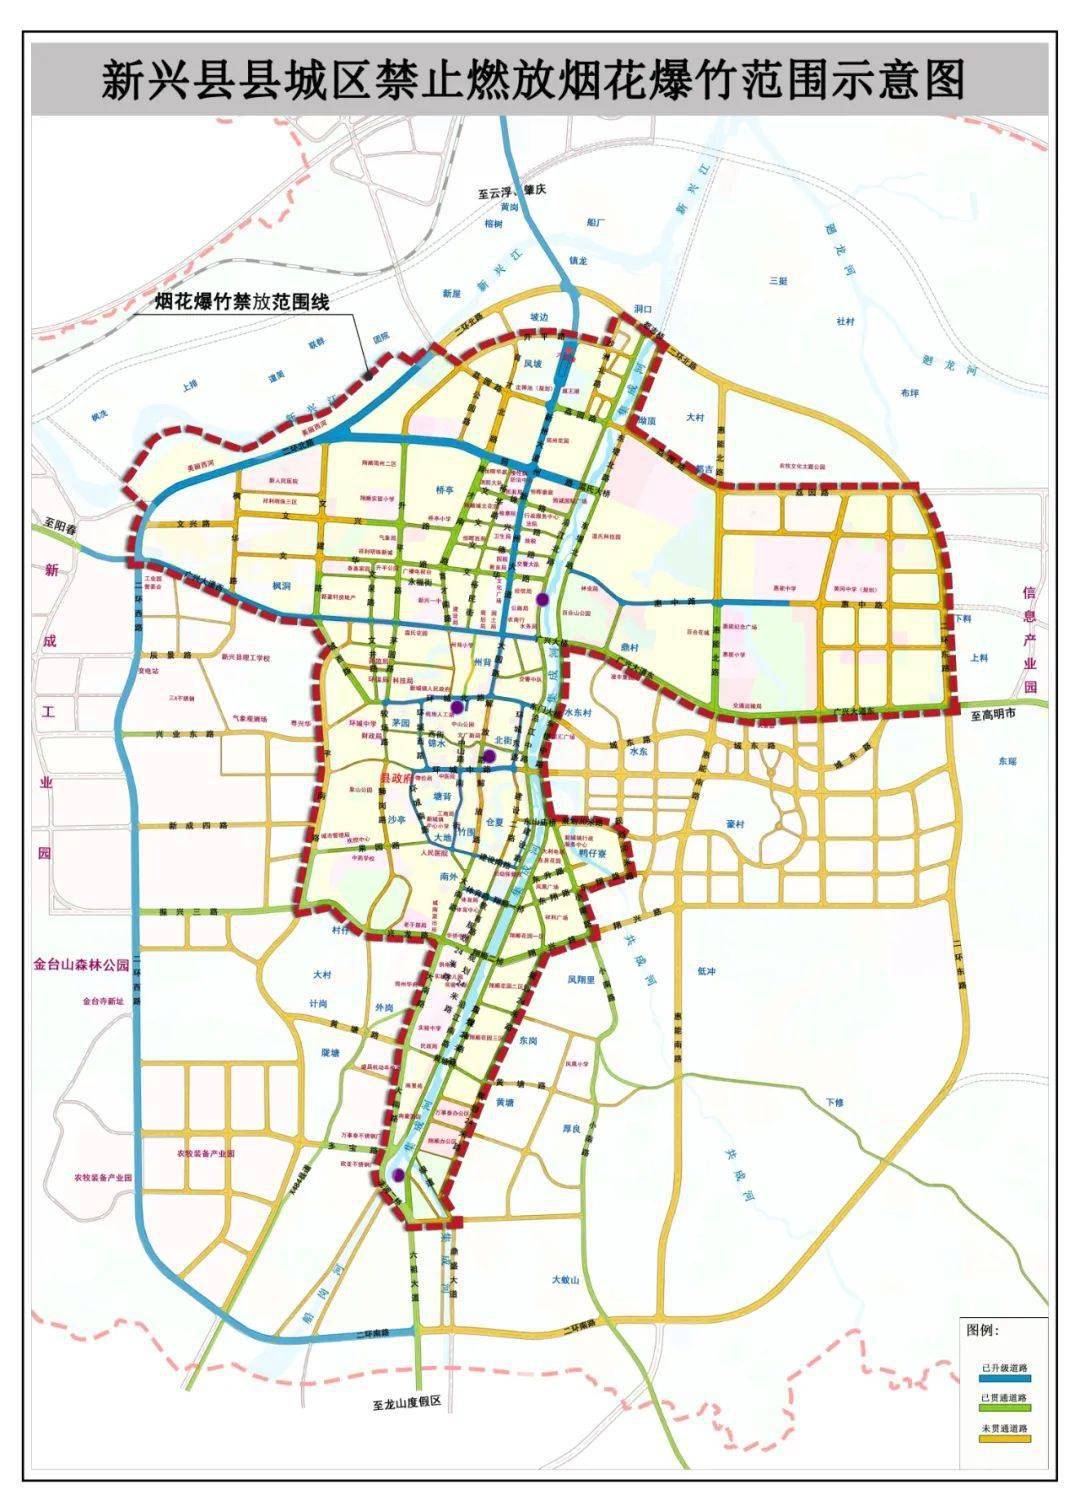 新兴县新城镇地图图片